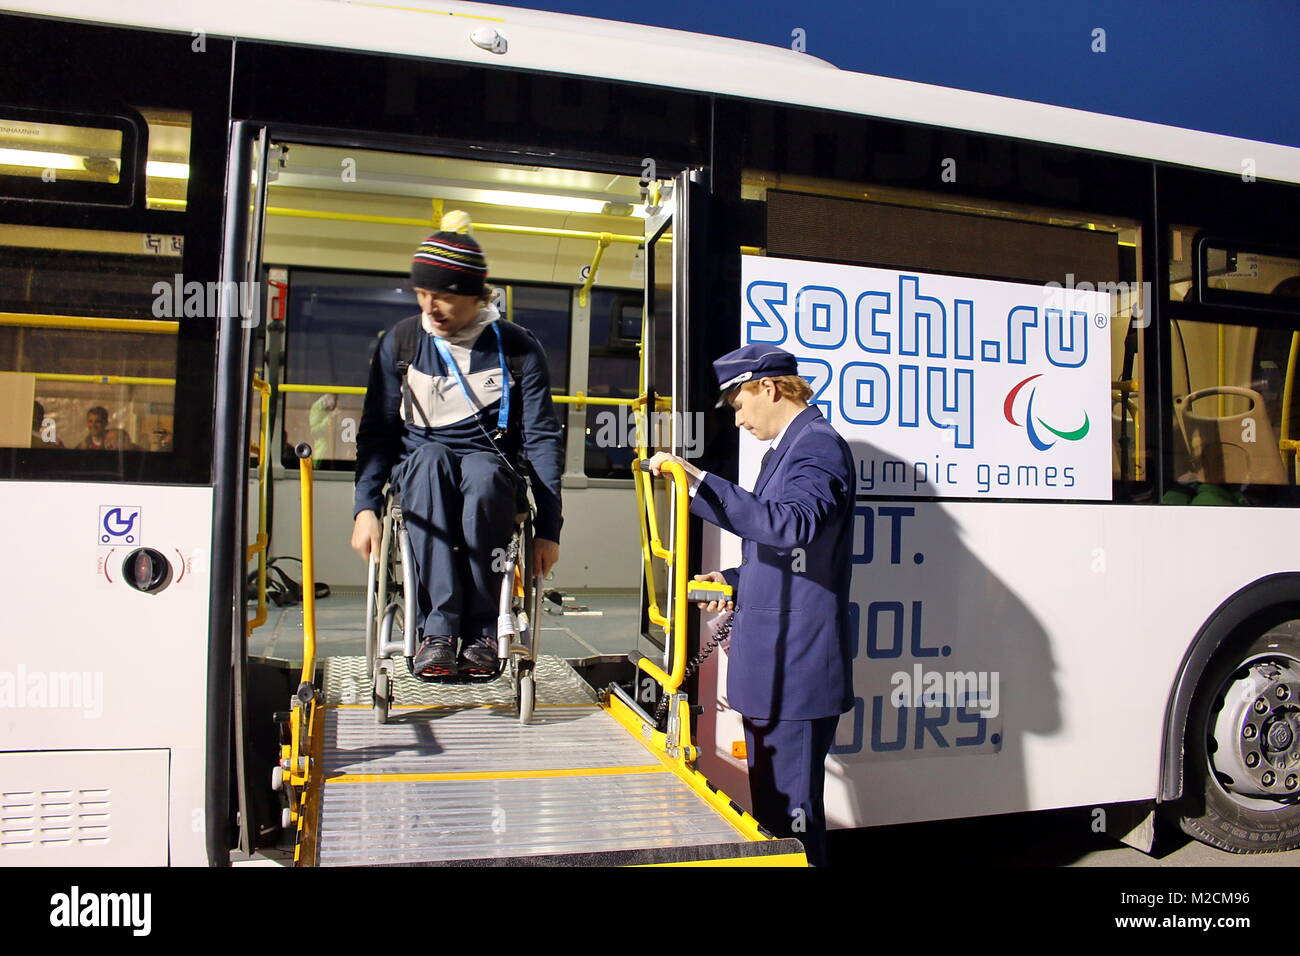 Professeur en Bus Barrierefreier einen bei den paralympiques Sotschi 2014 / 2014 Jeux paralympiques d'hiver de Sotchi Banque D'Images